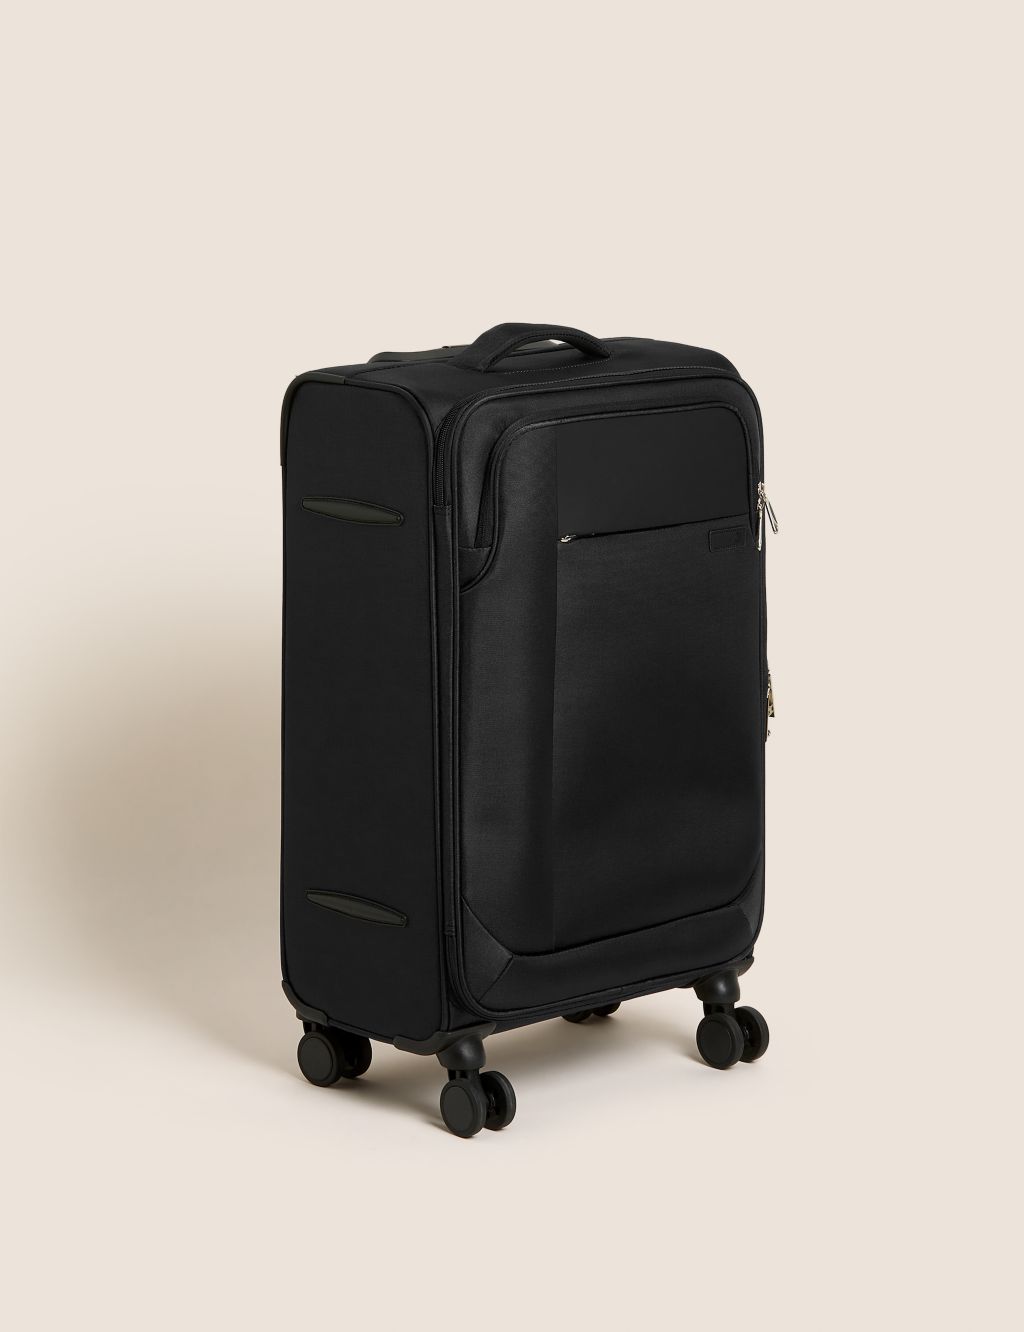 Lyon 4 Wheel Soft Medium Suitcase image 1